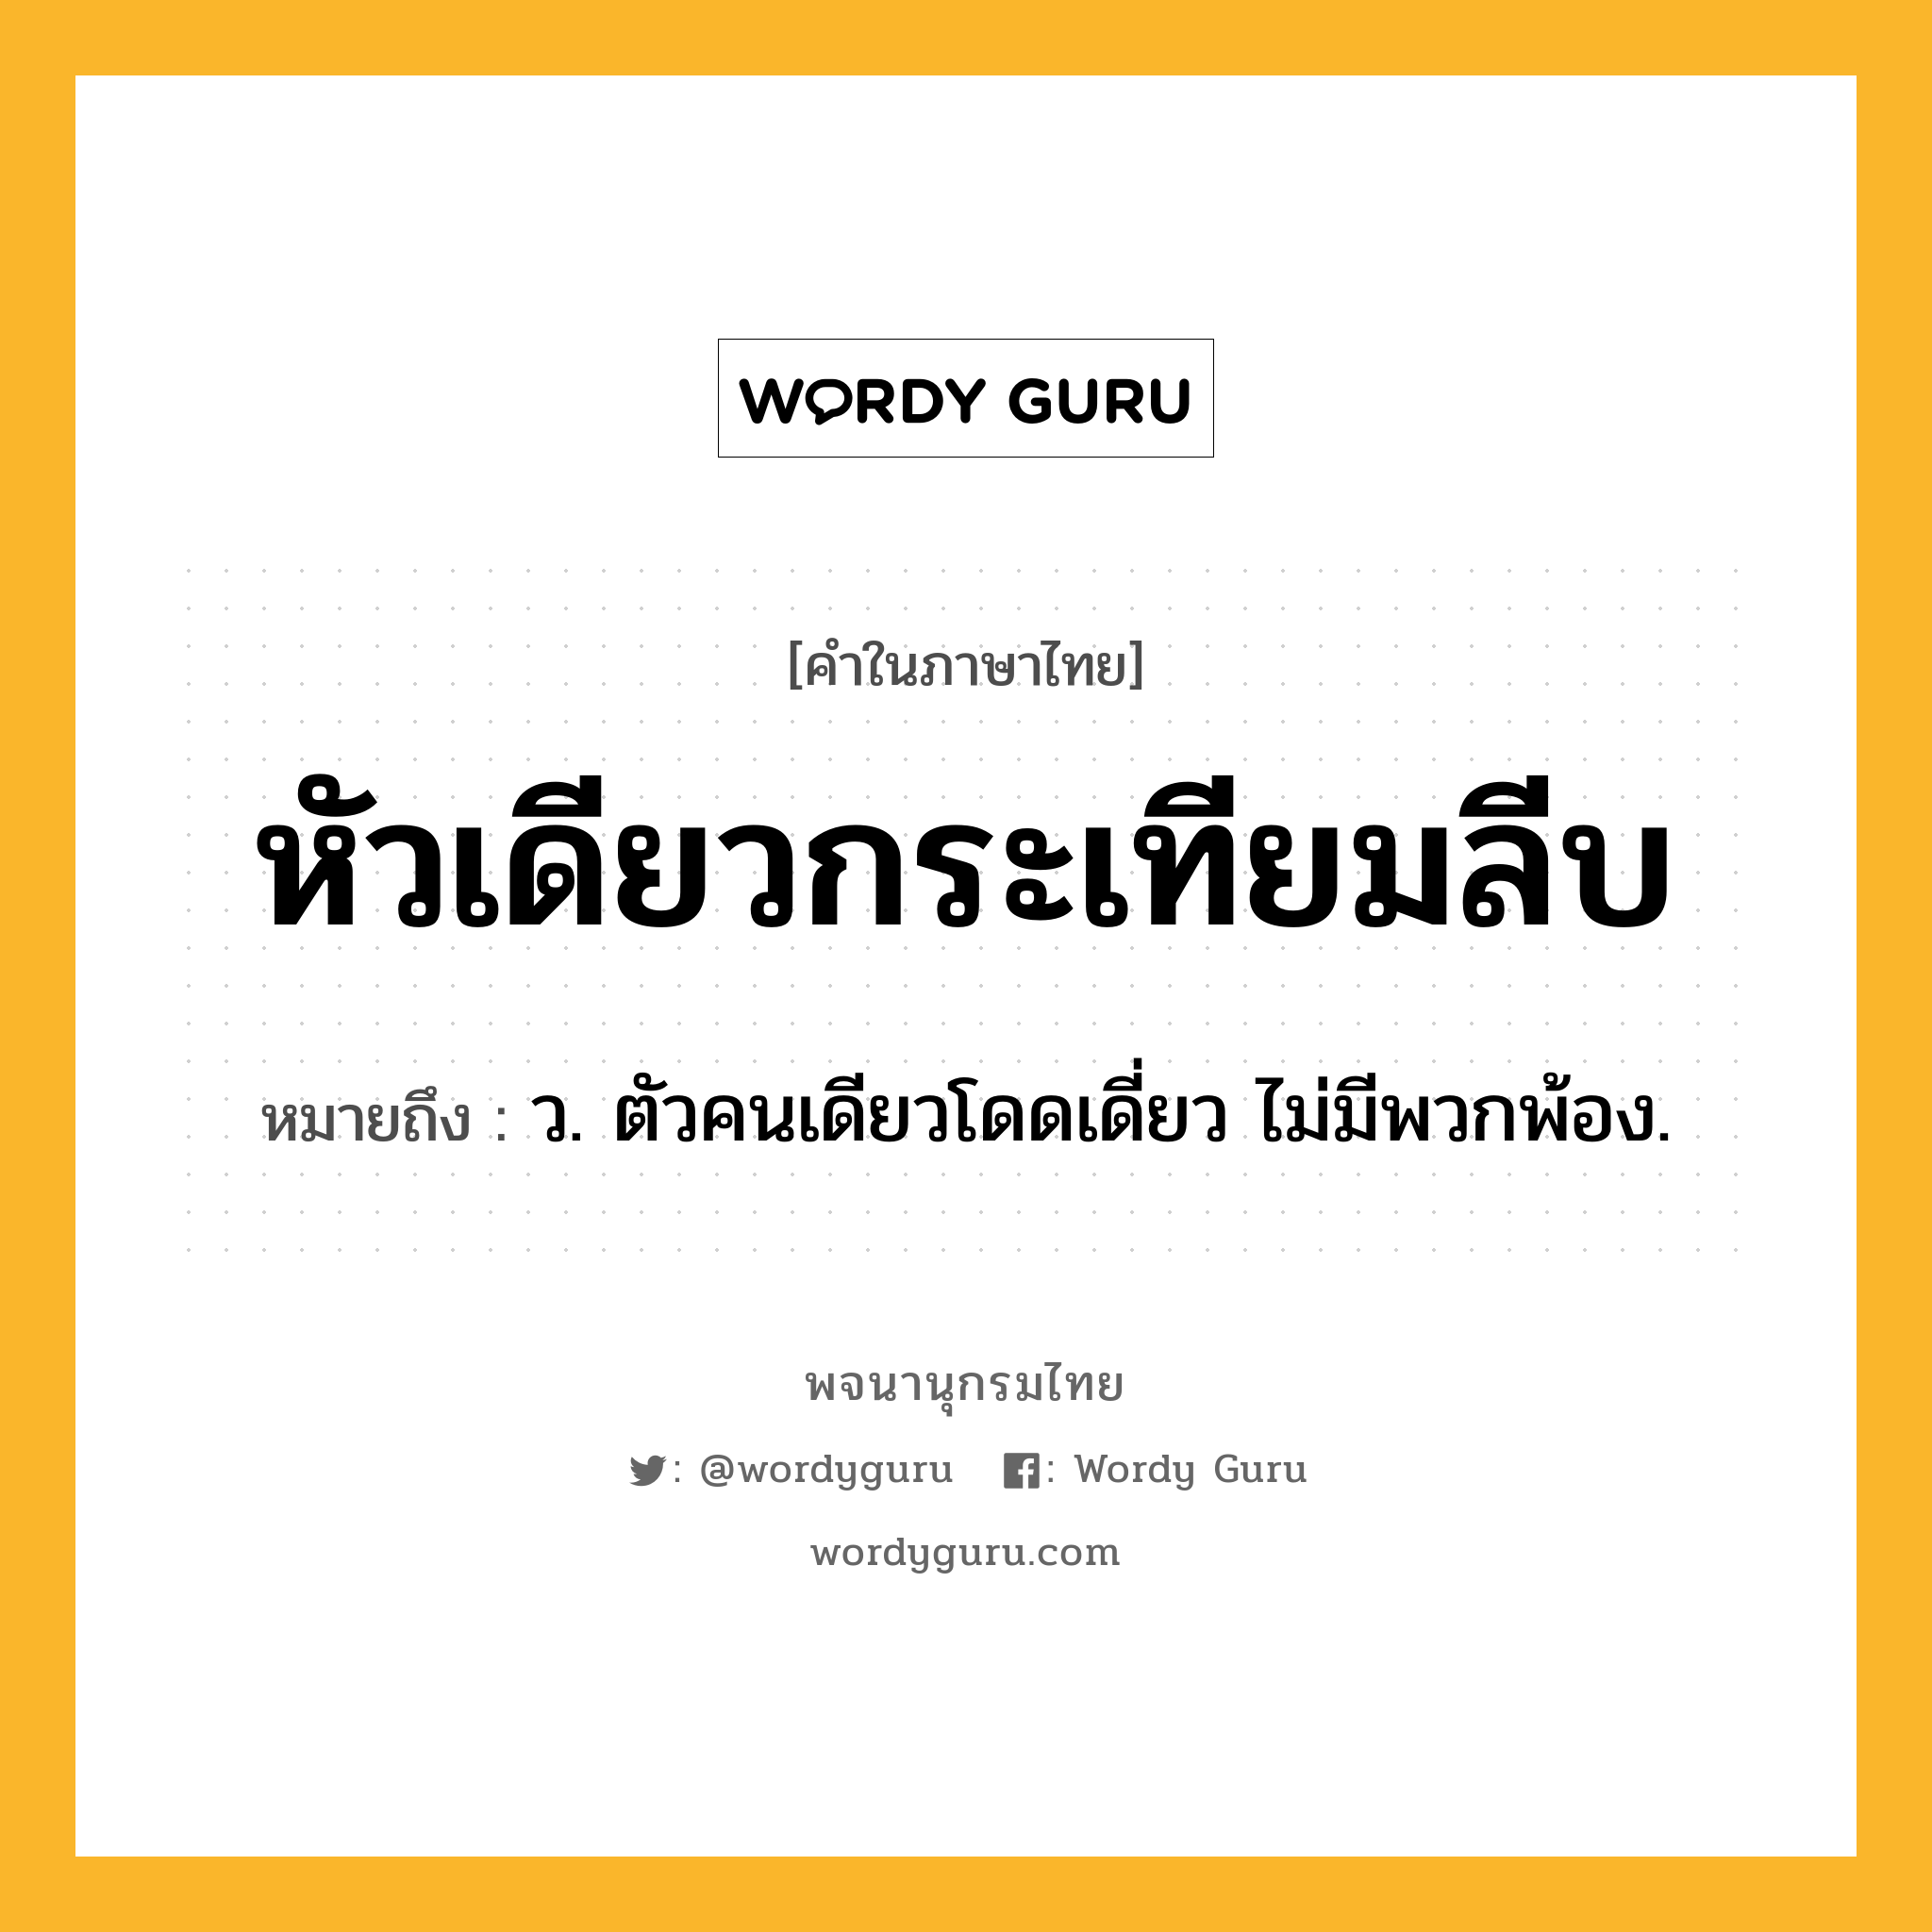 หัวเดียวกระเทียมลีบ หมายถึงอะไร?, คำในภาษาไทย หัวเดียวกระเทียมลีบ หมายถึง ว. ตัวคนเดียวโดดเดี่ยว ไม่มีพวกพ้อง.